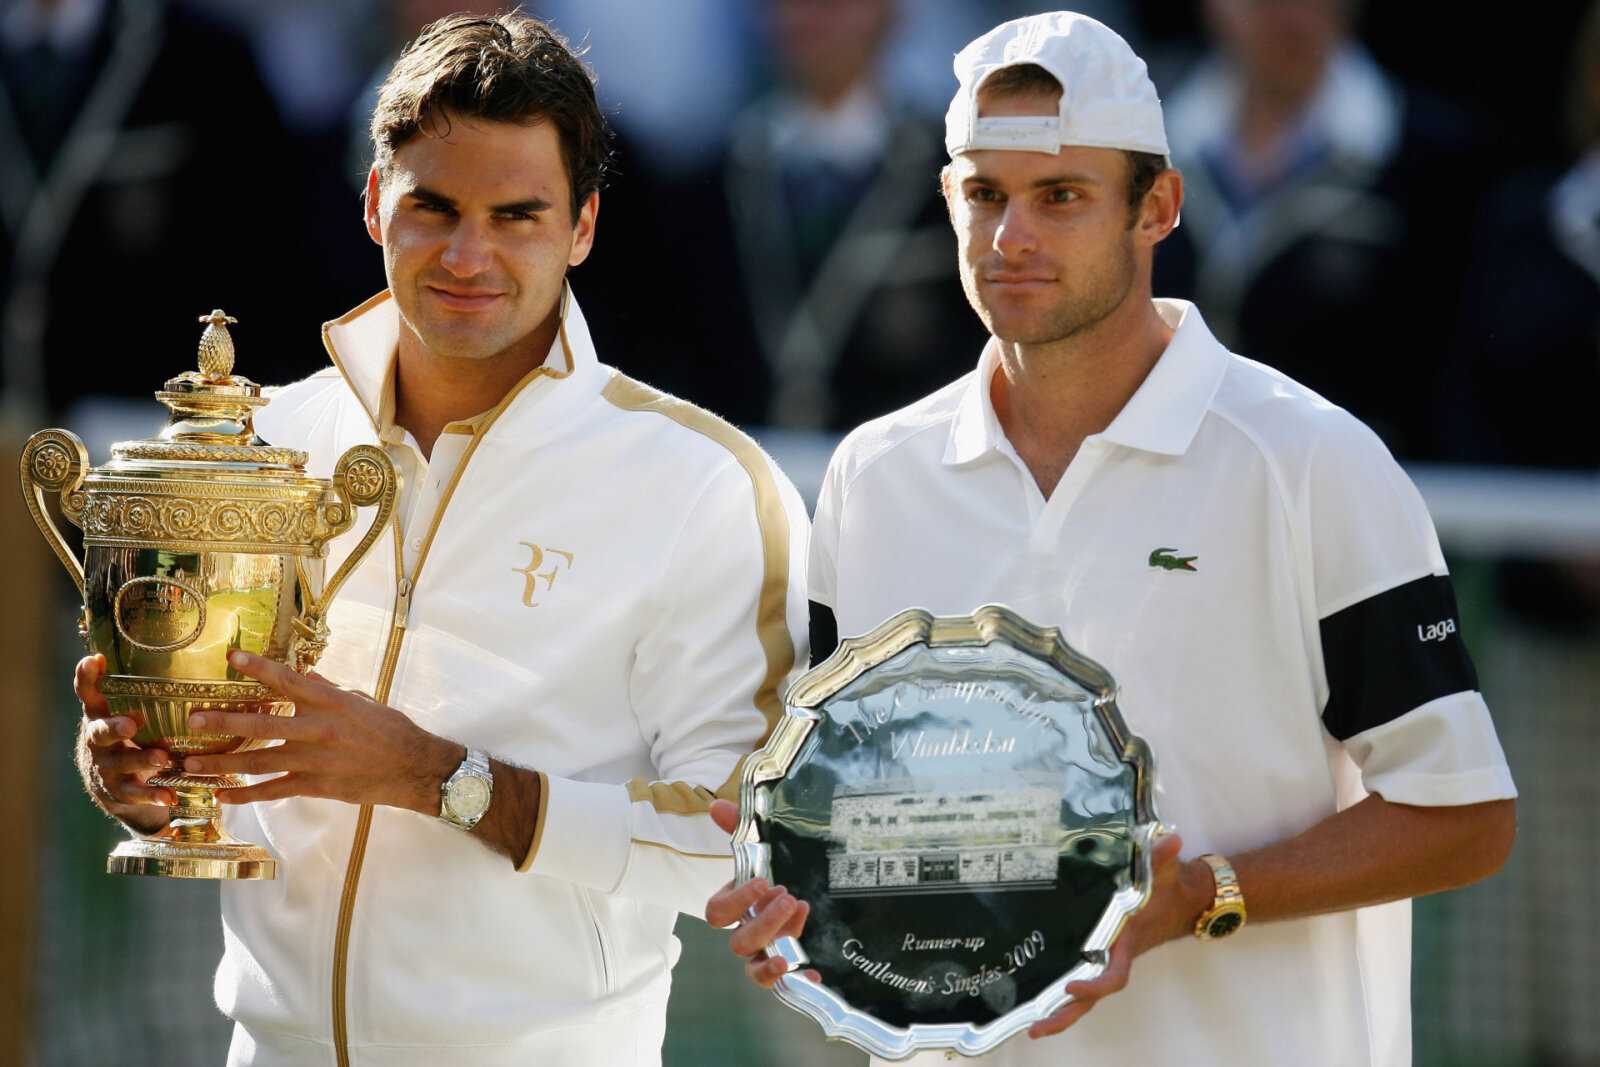 Roger Federer et Andy Roddick discutent des formations de la Laver Cup, y compris Sampras, Agassi et autres